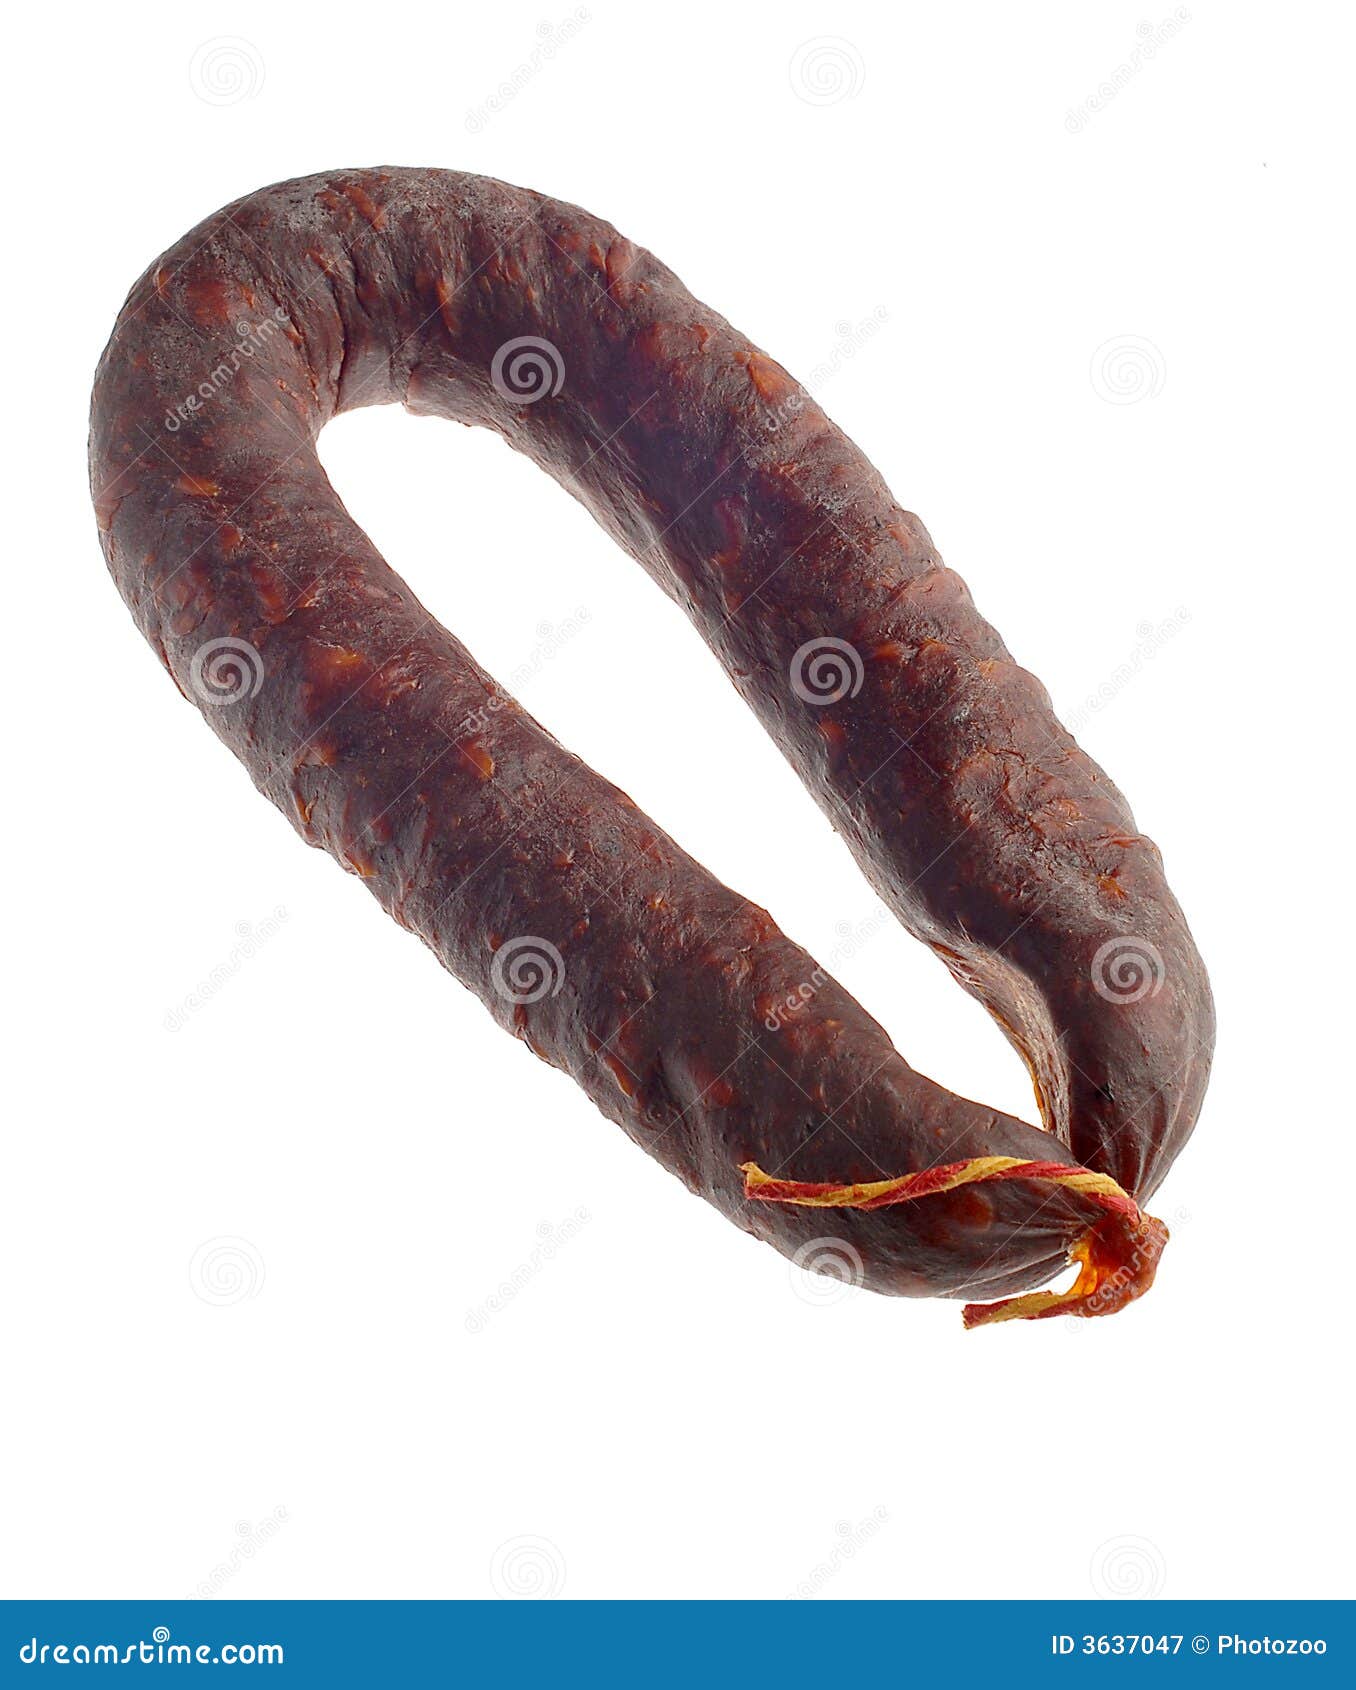 chorizo sausage coil